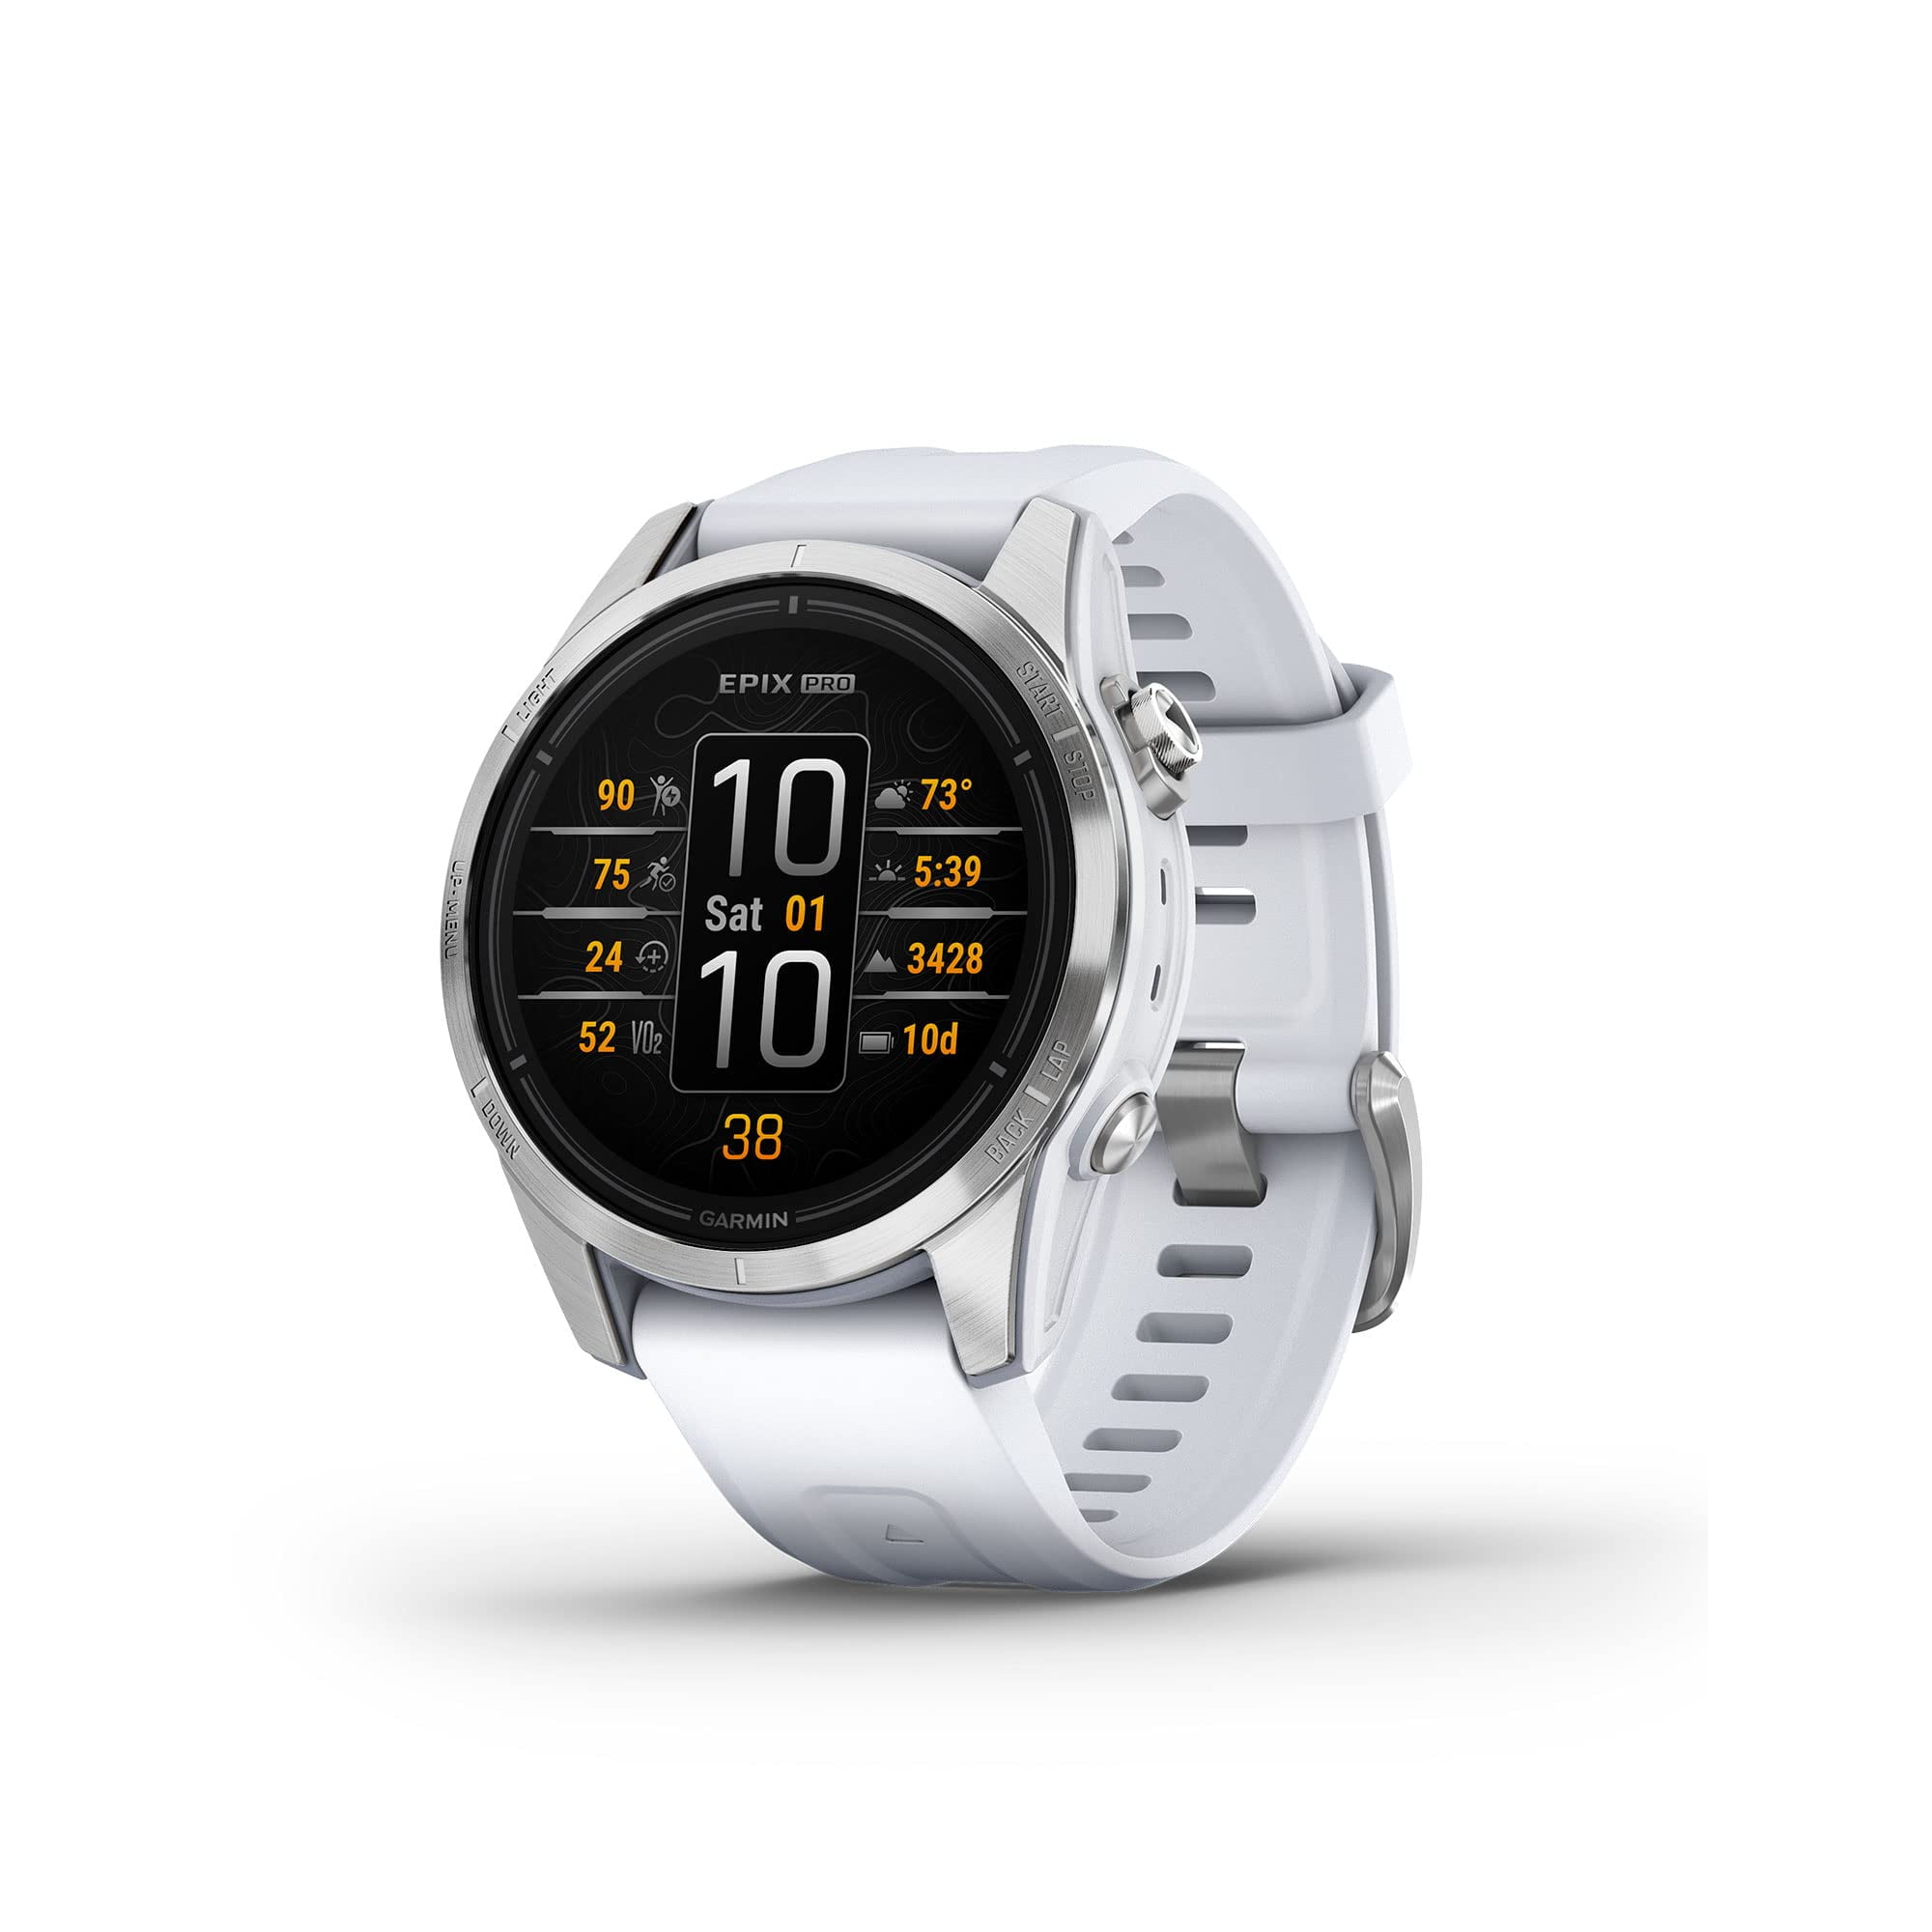 Garmin Epix Gen 2 Review: One Of The Finest Premium Smartwatches